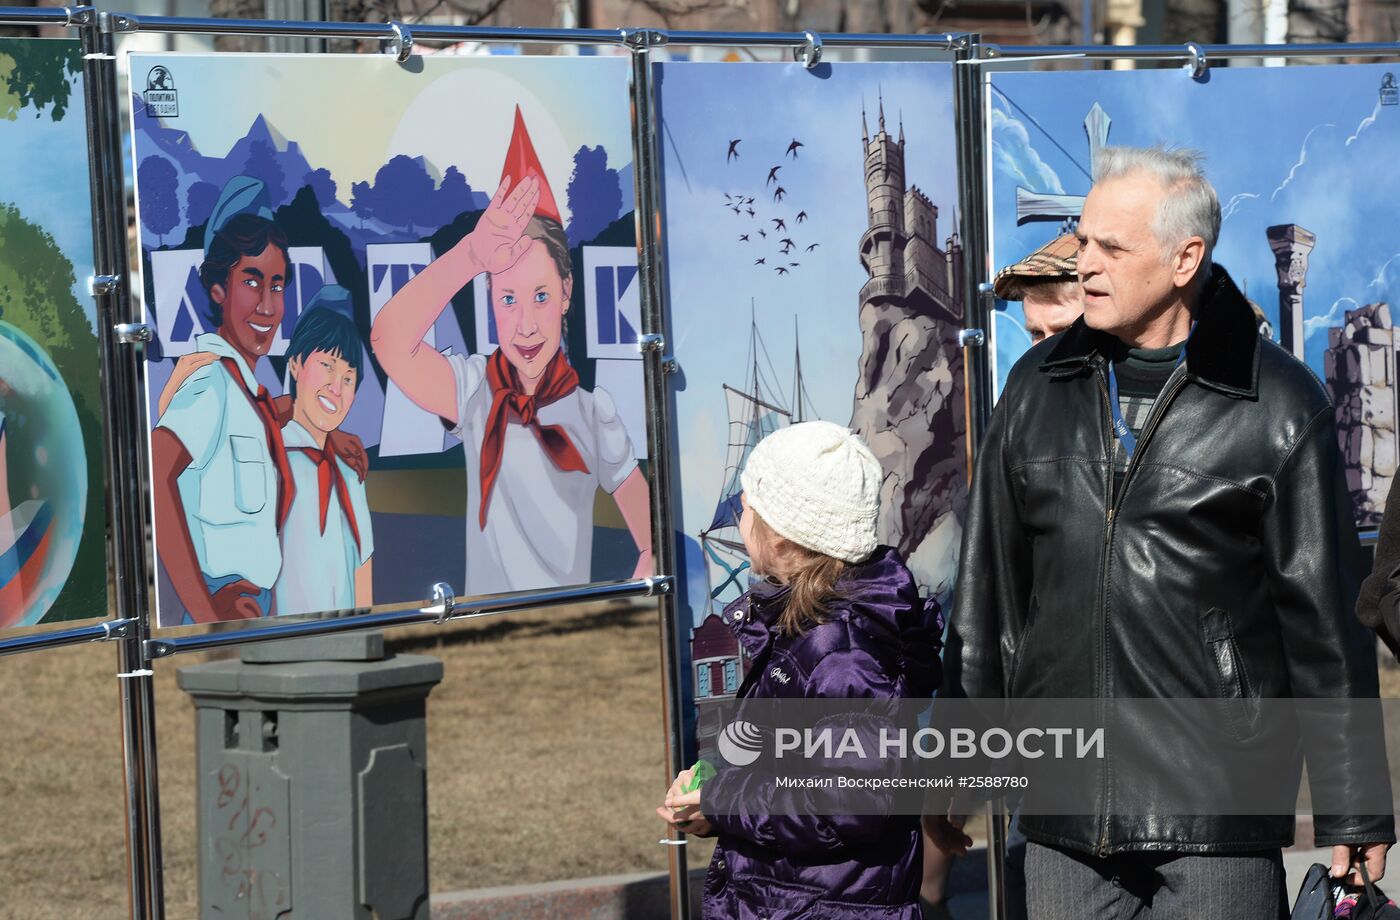 Арт-выставка графических работ "Крым. Возвращение в родную гавань"